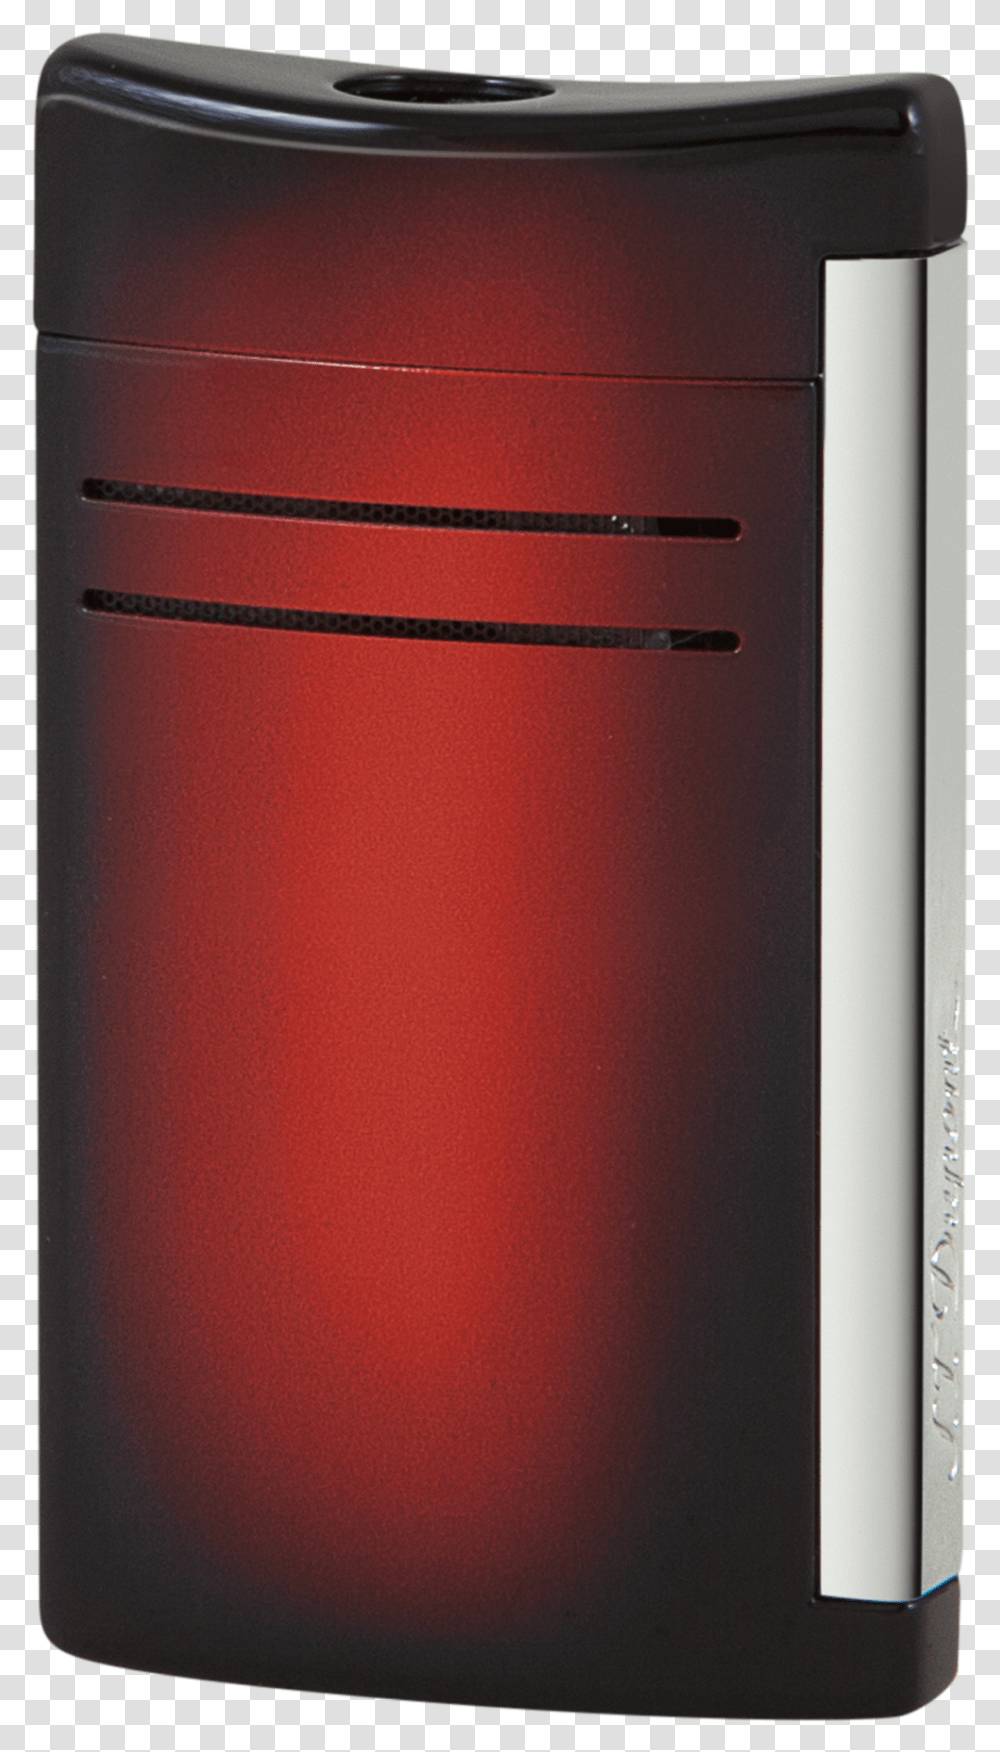 St Dupont Sunburst Red, Appliance, Refrigerator Transparent Png